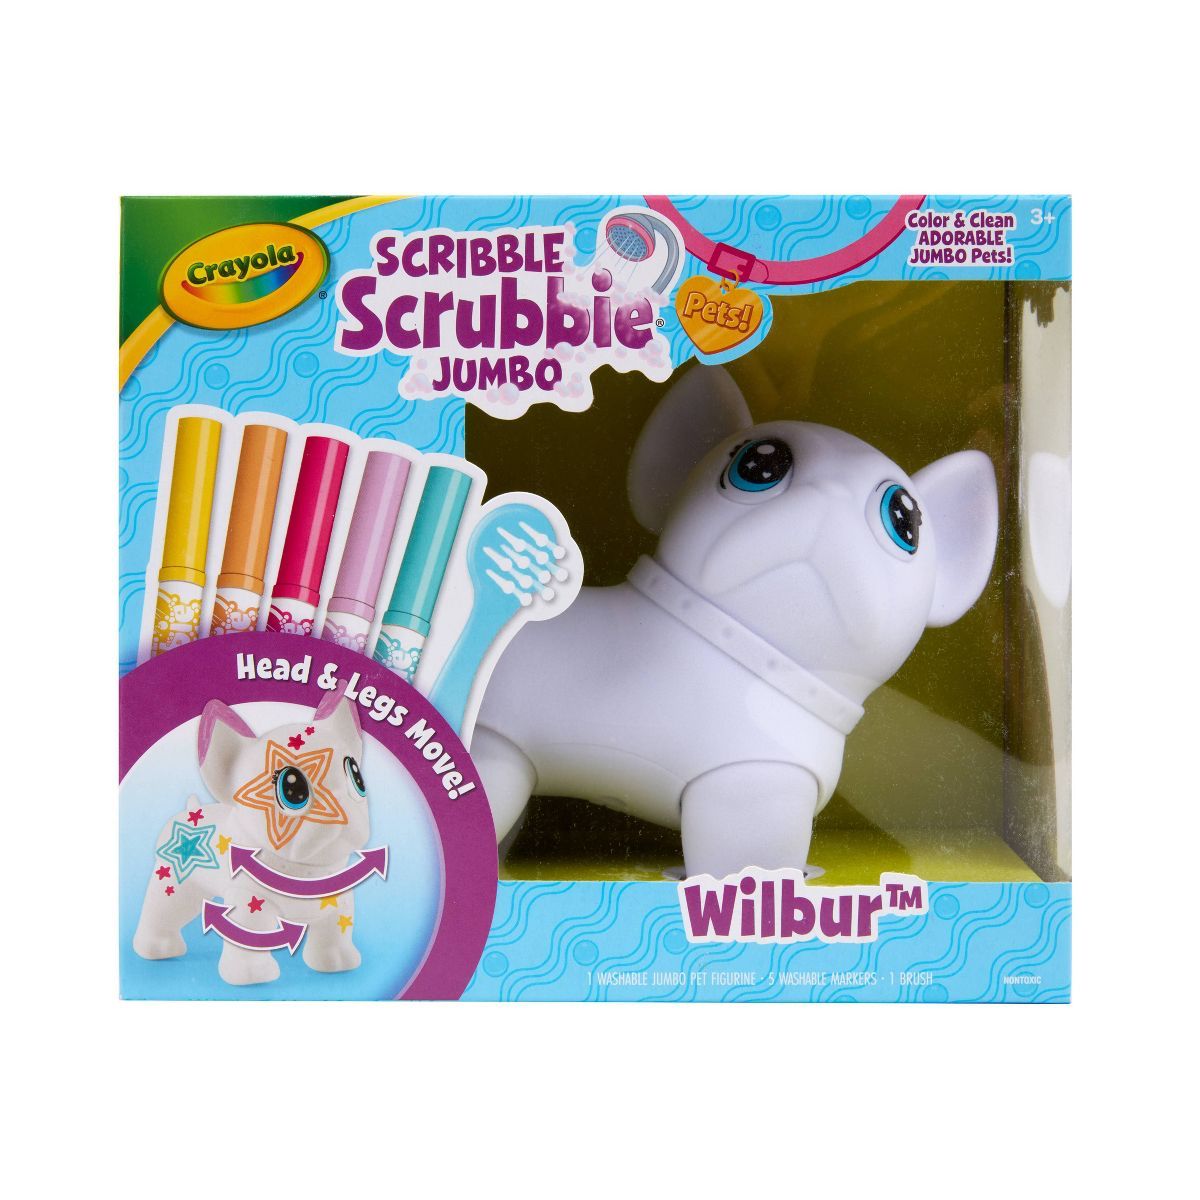 Crayola Scribble Scrubbie Jumbo Pet | Target